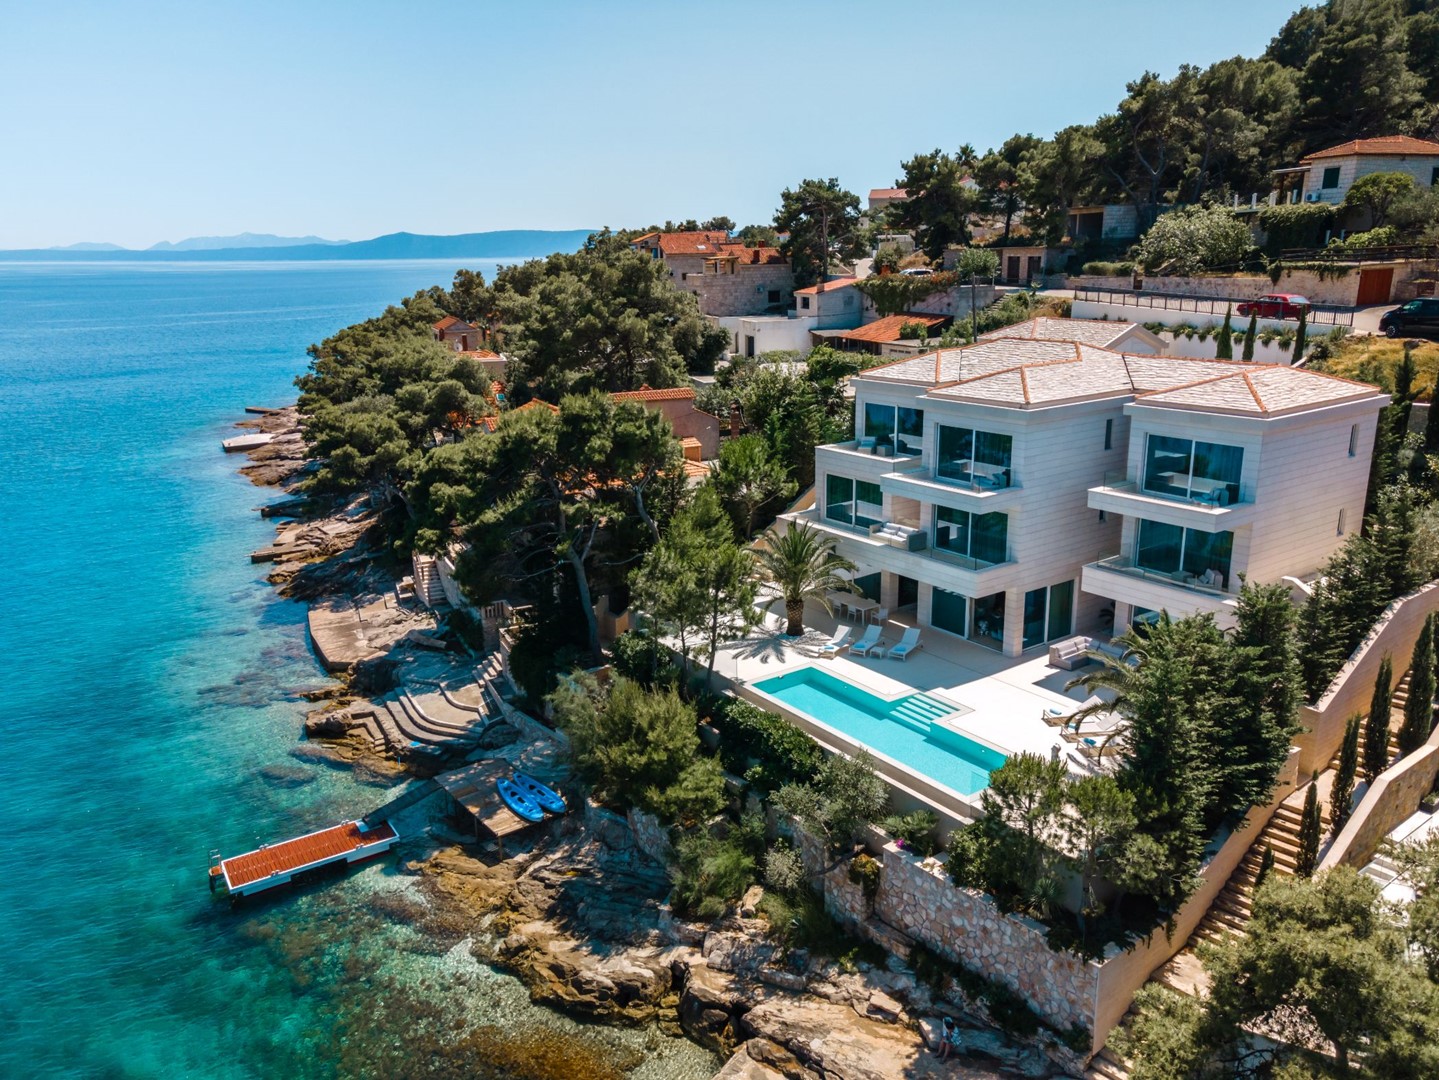 Alternativer Eigenschafts Name:
Luxusvilla Murano    kroatische Inseln